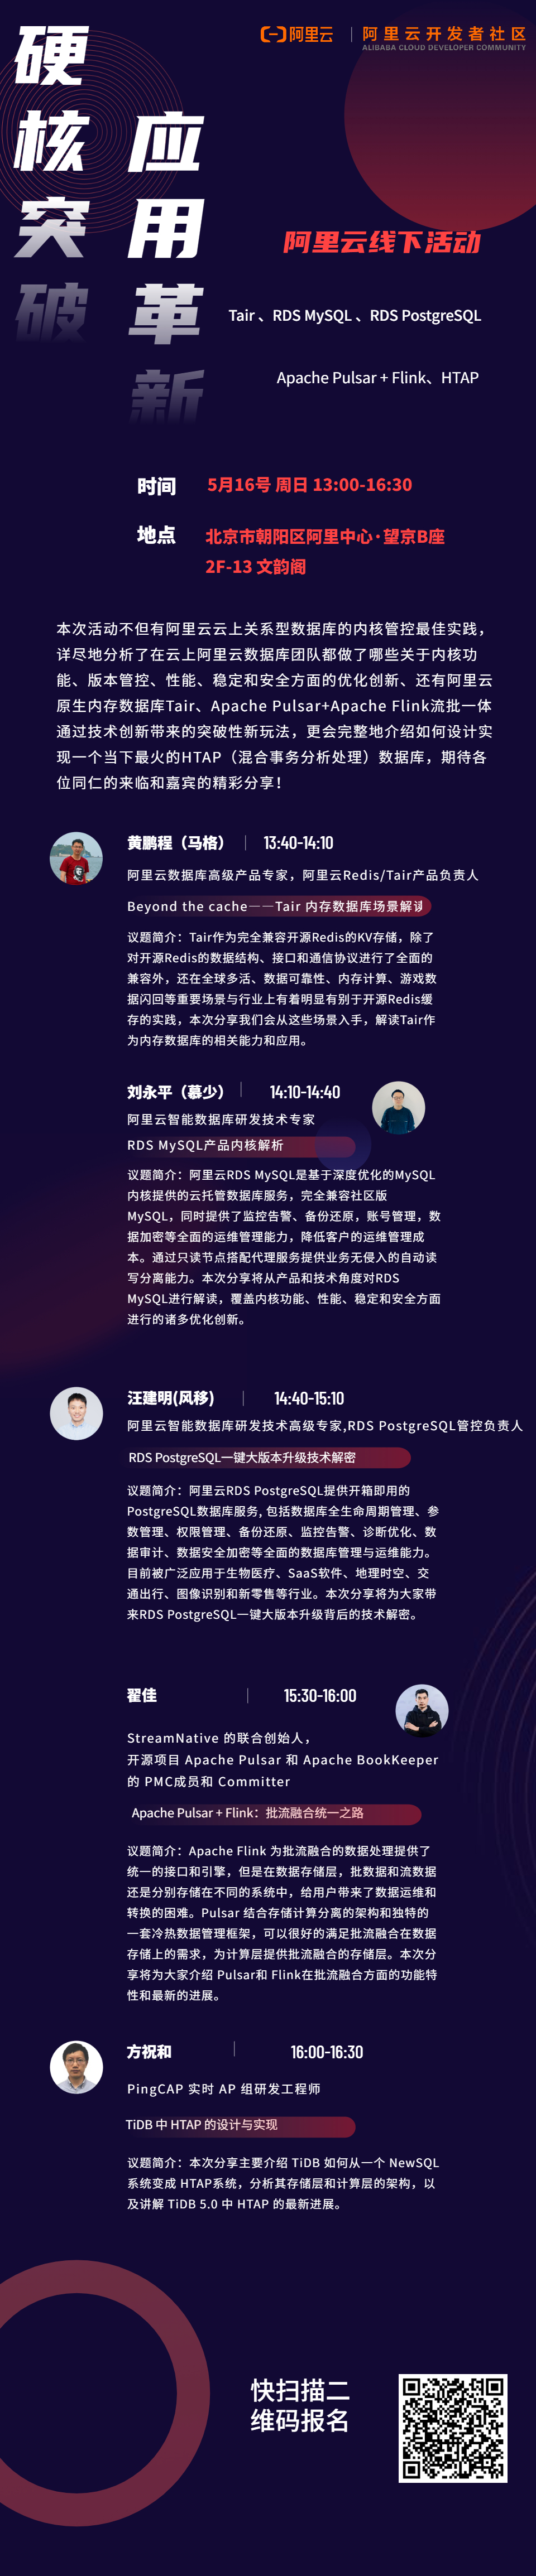 5-16北京数据库活动海报.jpg